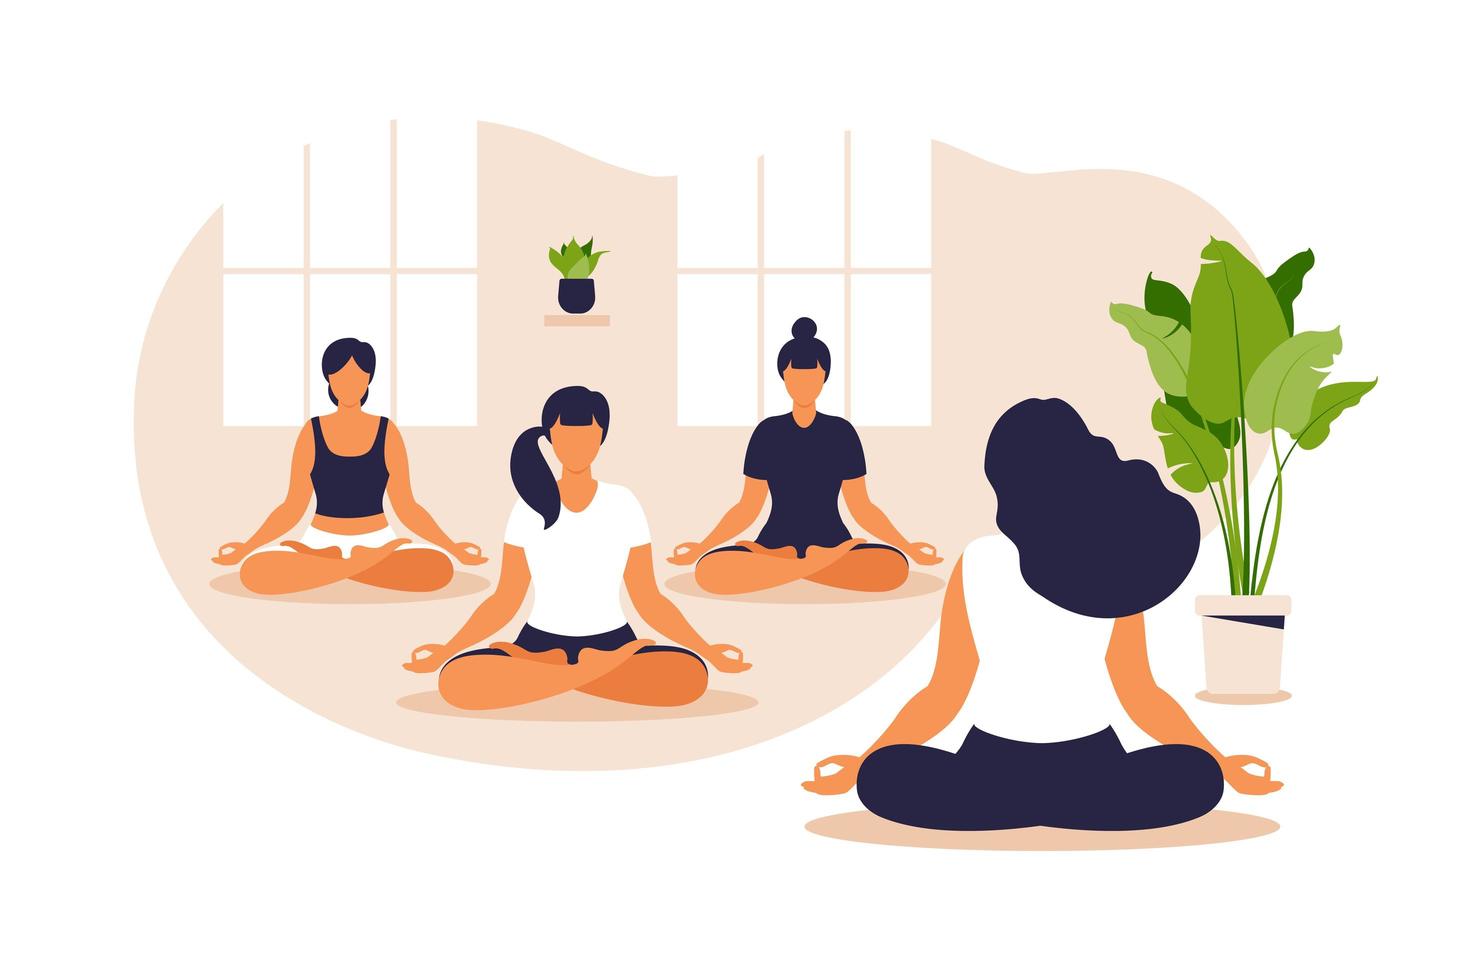 grupo de ioga. equilíbrio de posição e alongamento. pessoas sentadas juntas na posição de lótus, elas estão praticando a meditação da atenção plena e ioga, estilo de vida saudável e conceito de espiritualidade. vetor. vetor